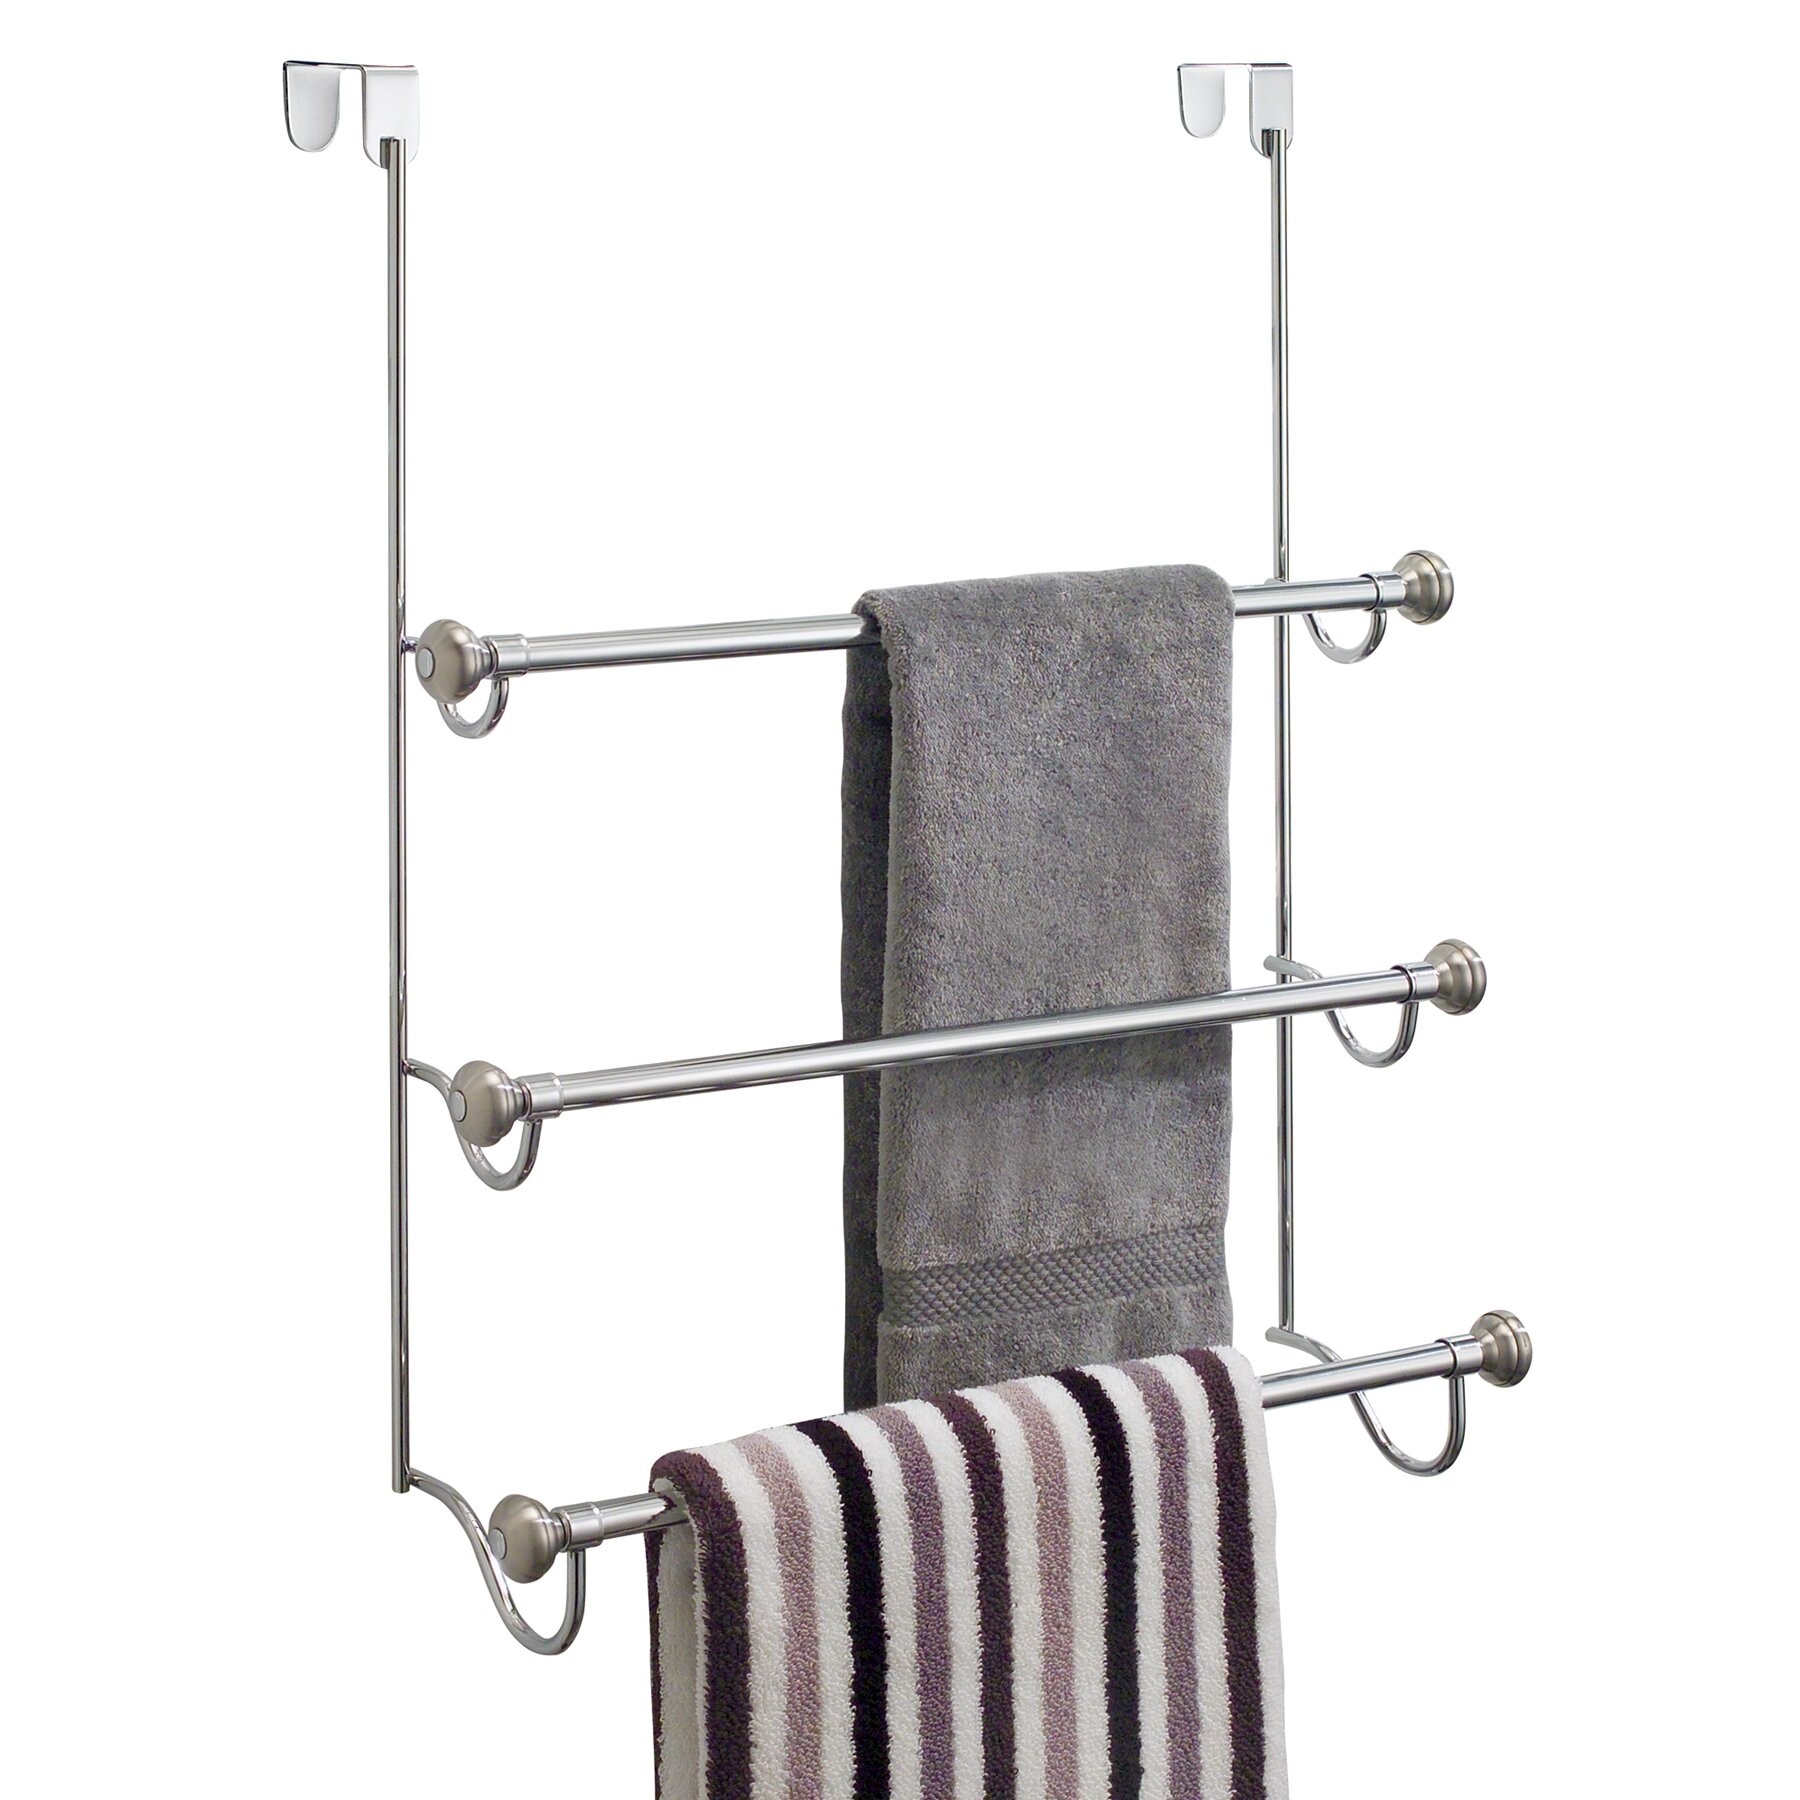 Towel rack on door